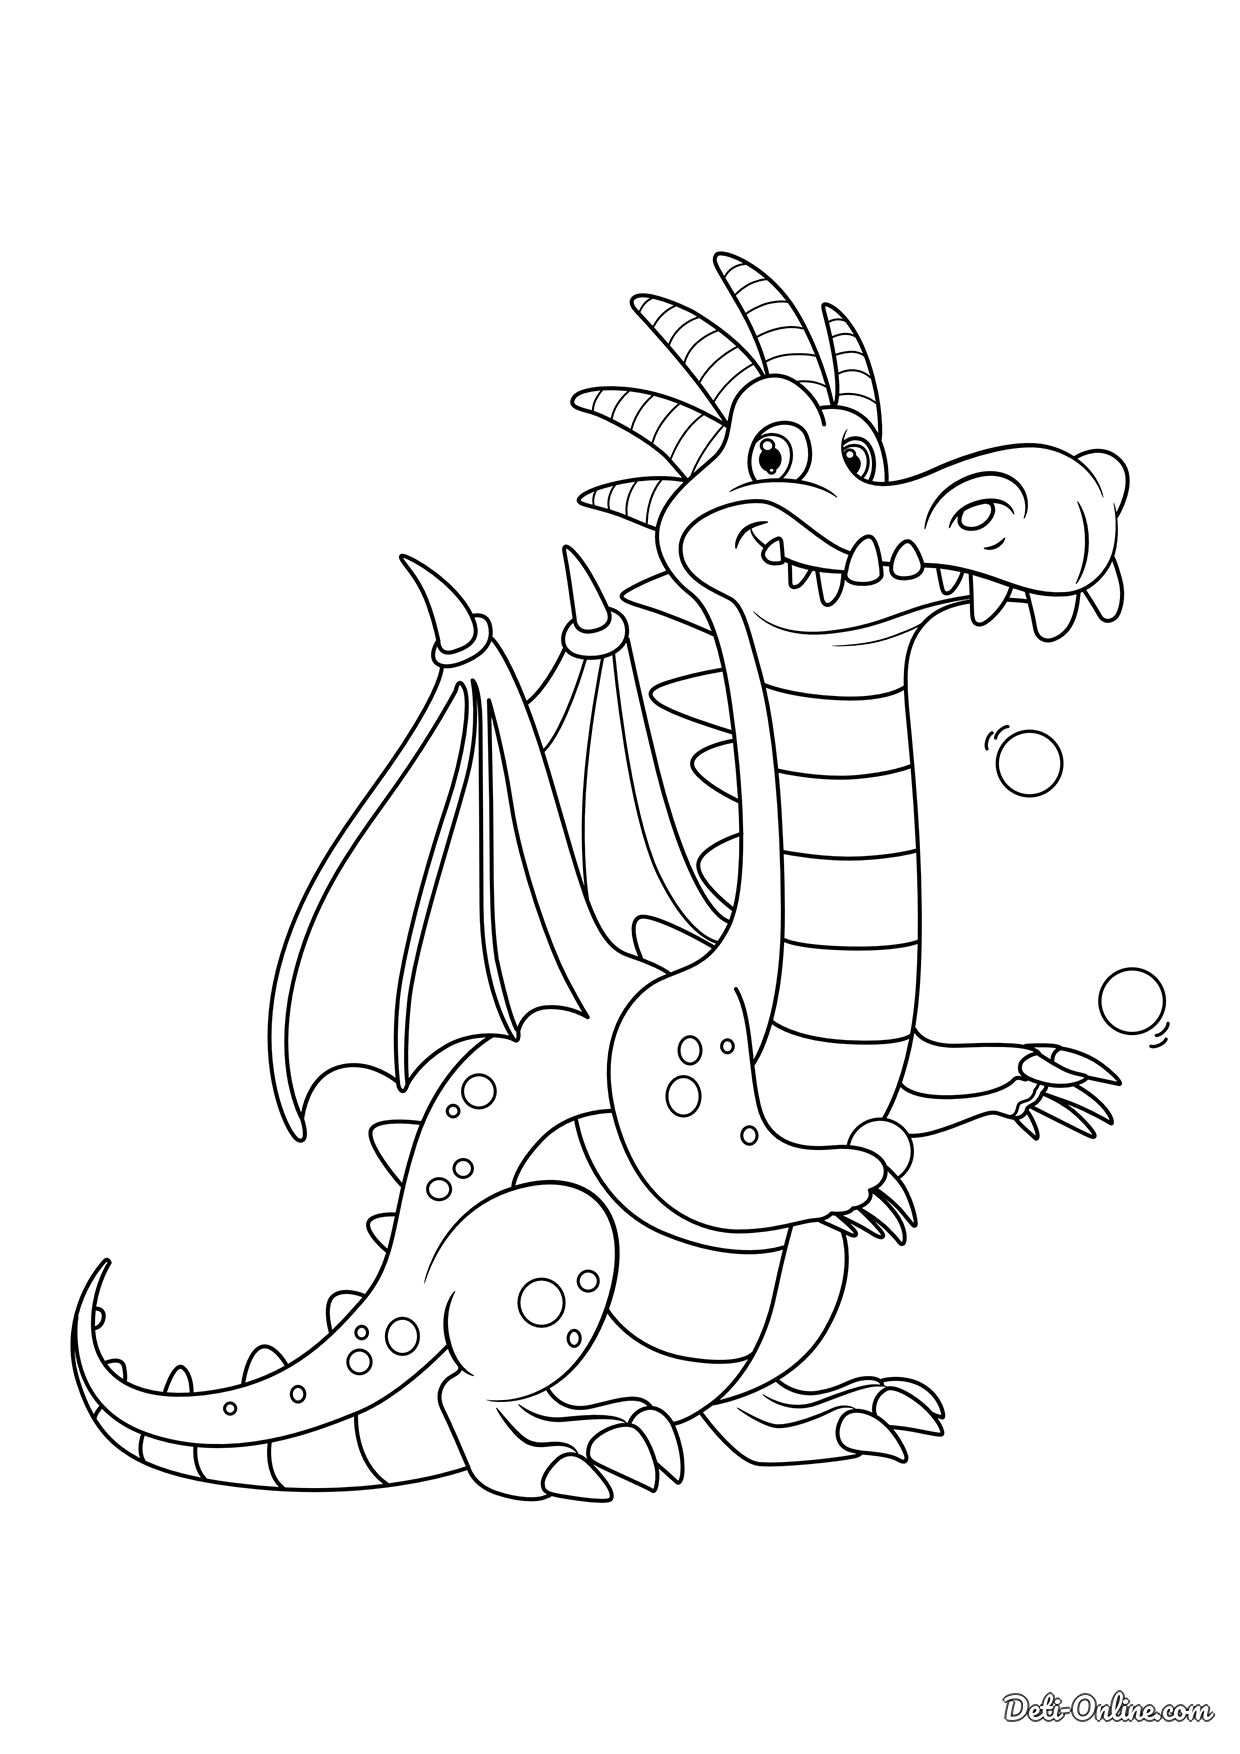 раскраска дракон для детей распечатать бесплатно